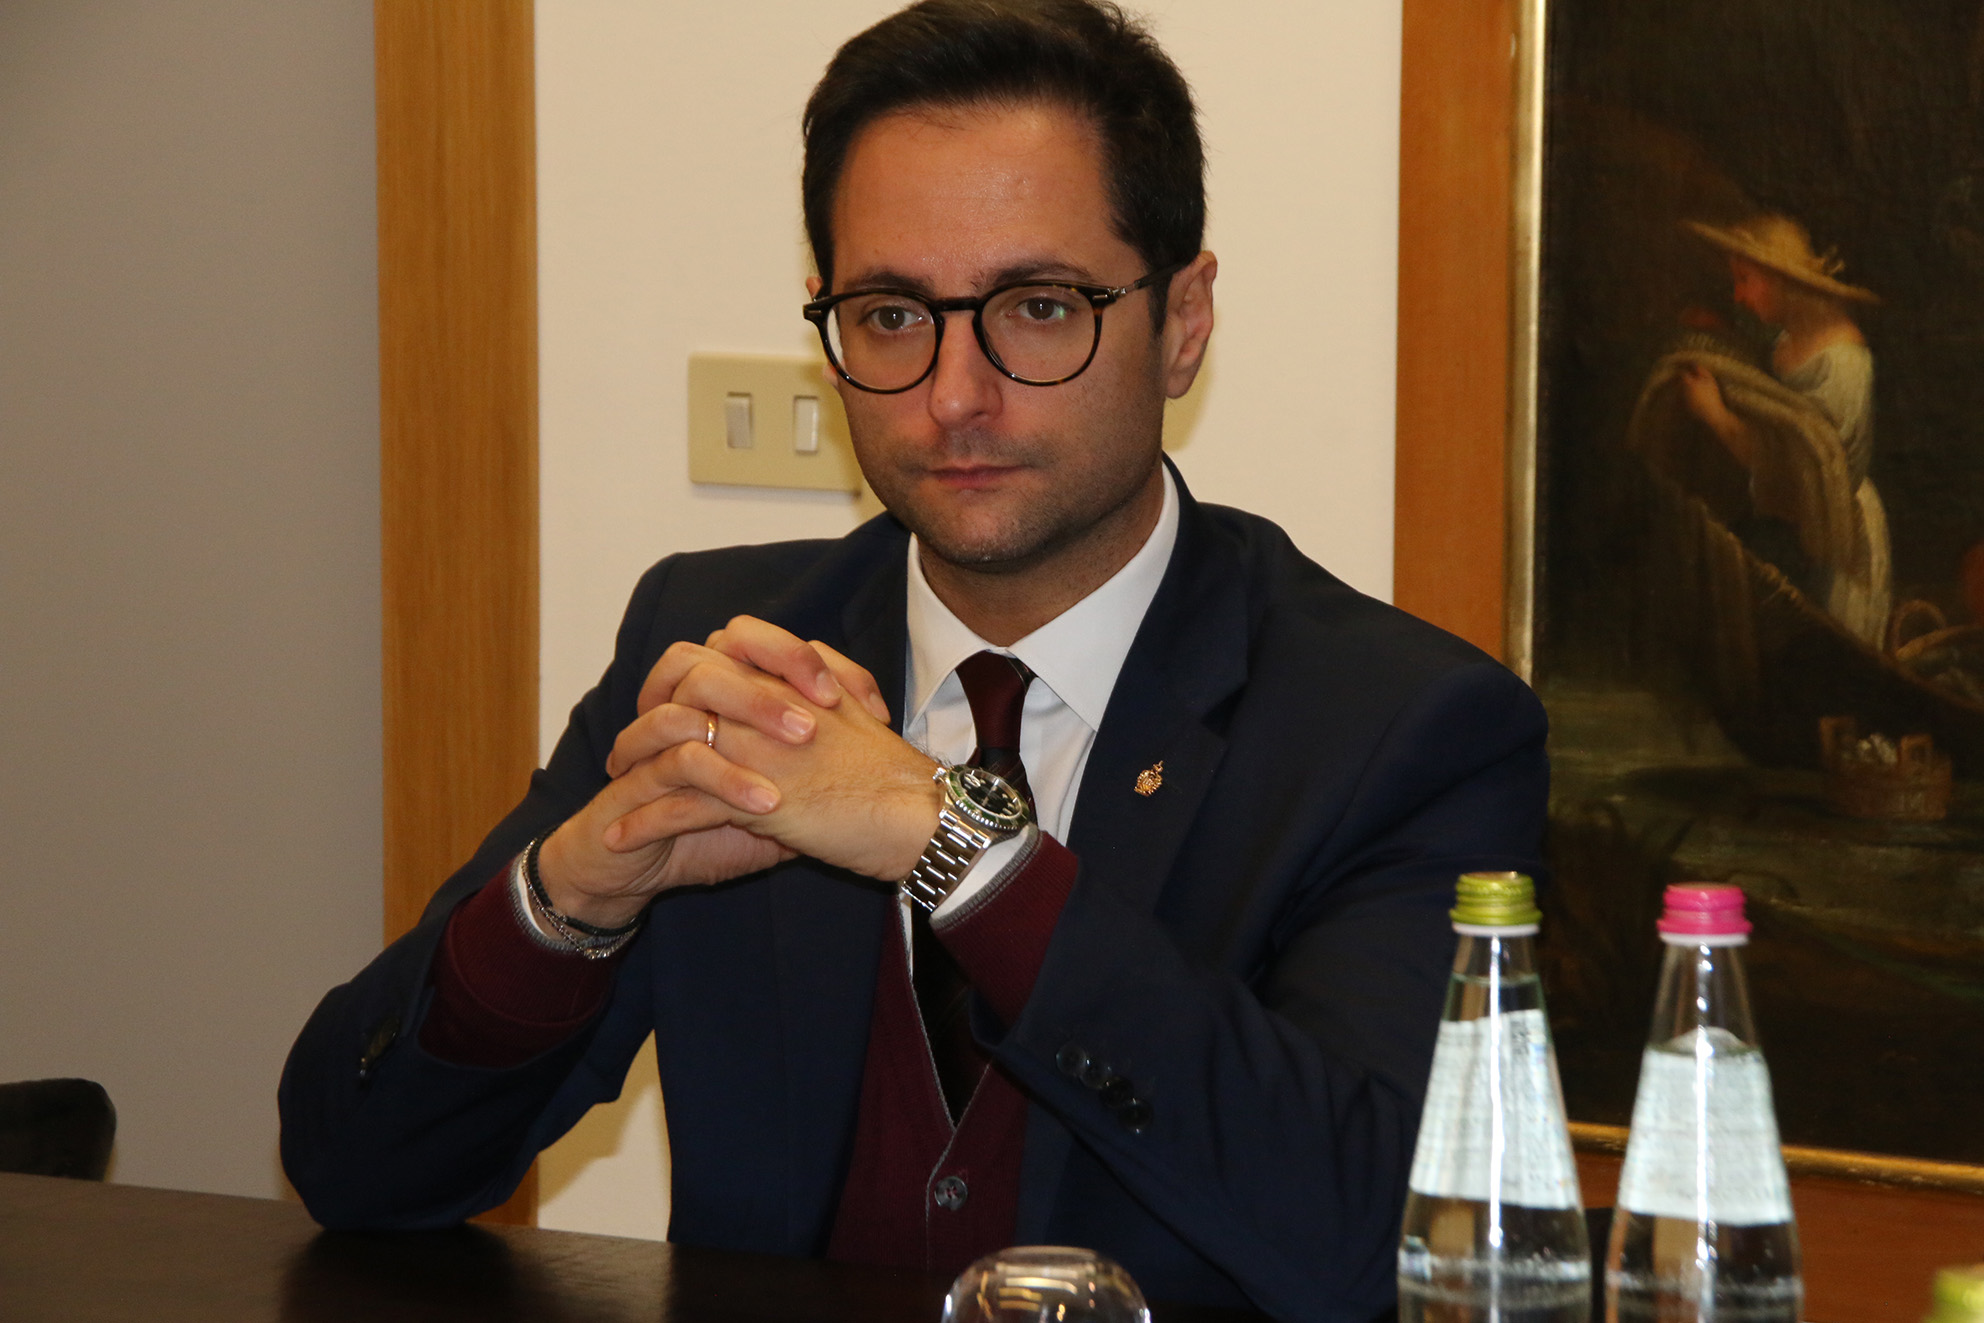 Des a San Marino, contrario il segretario Fabio Righi: “Per quel che mi riguarda, non venderemo il Paese”